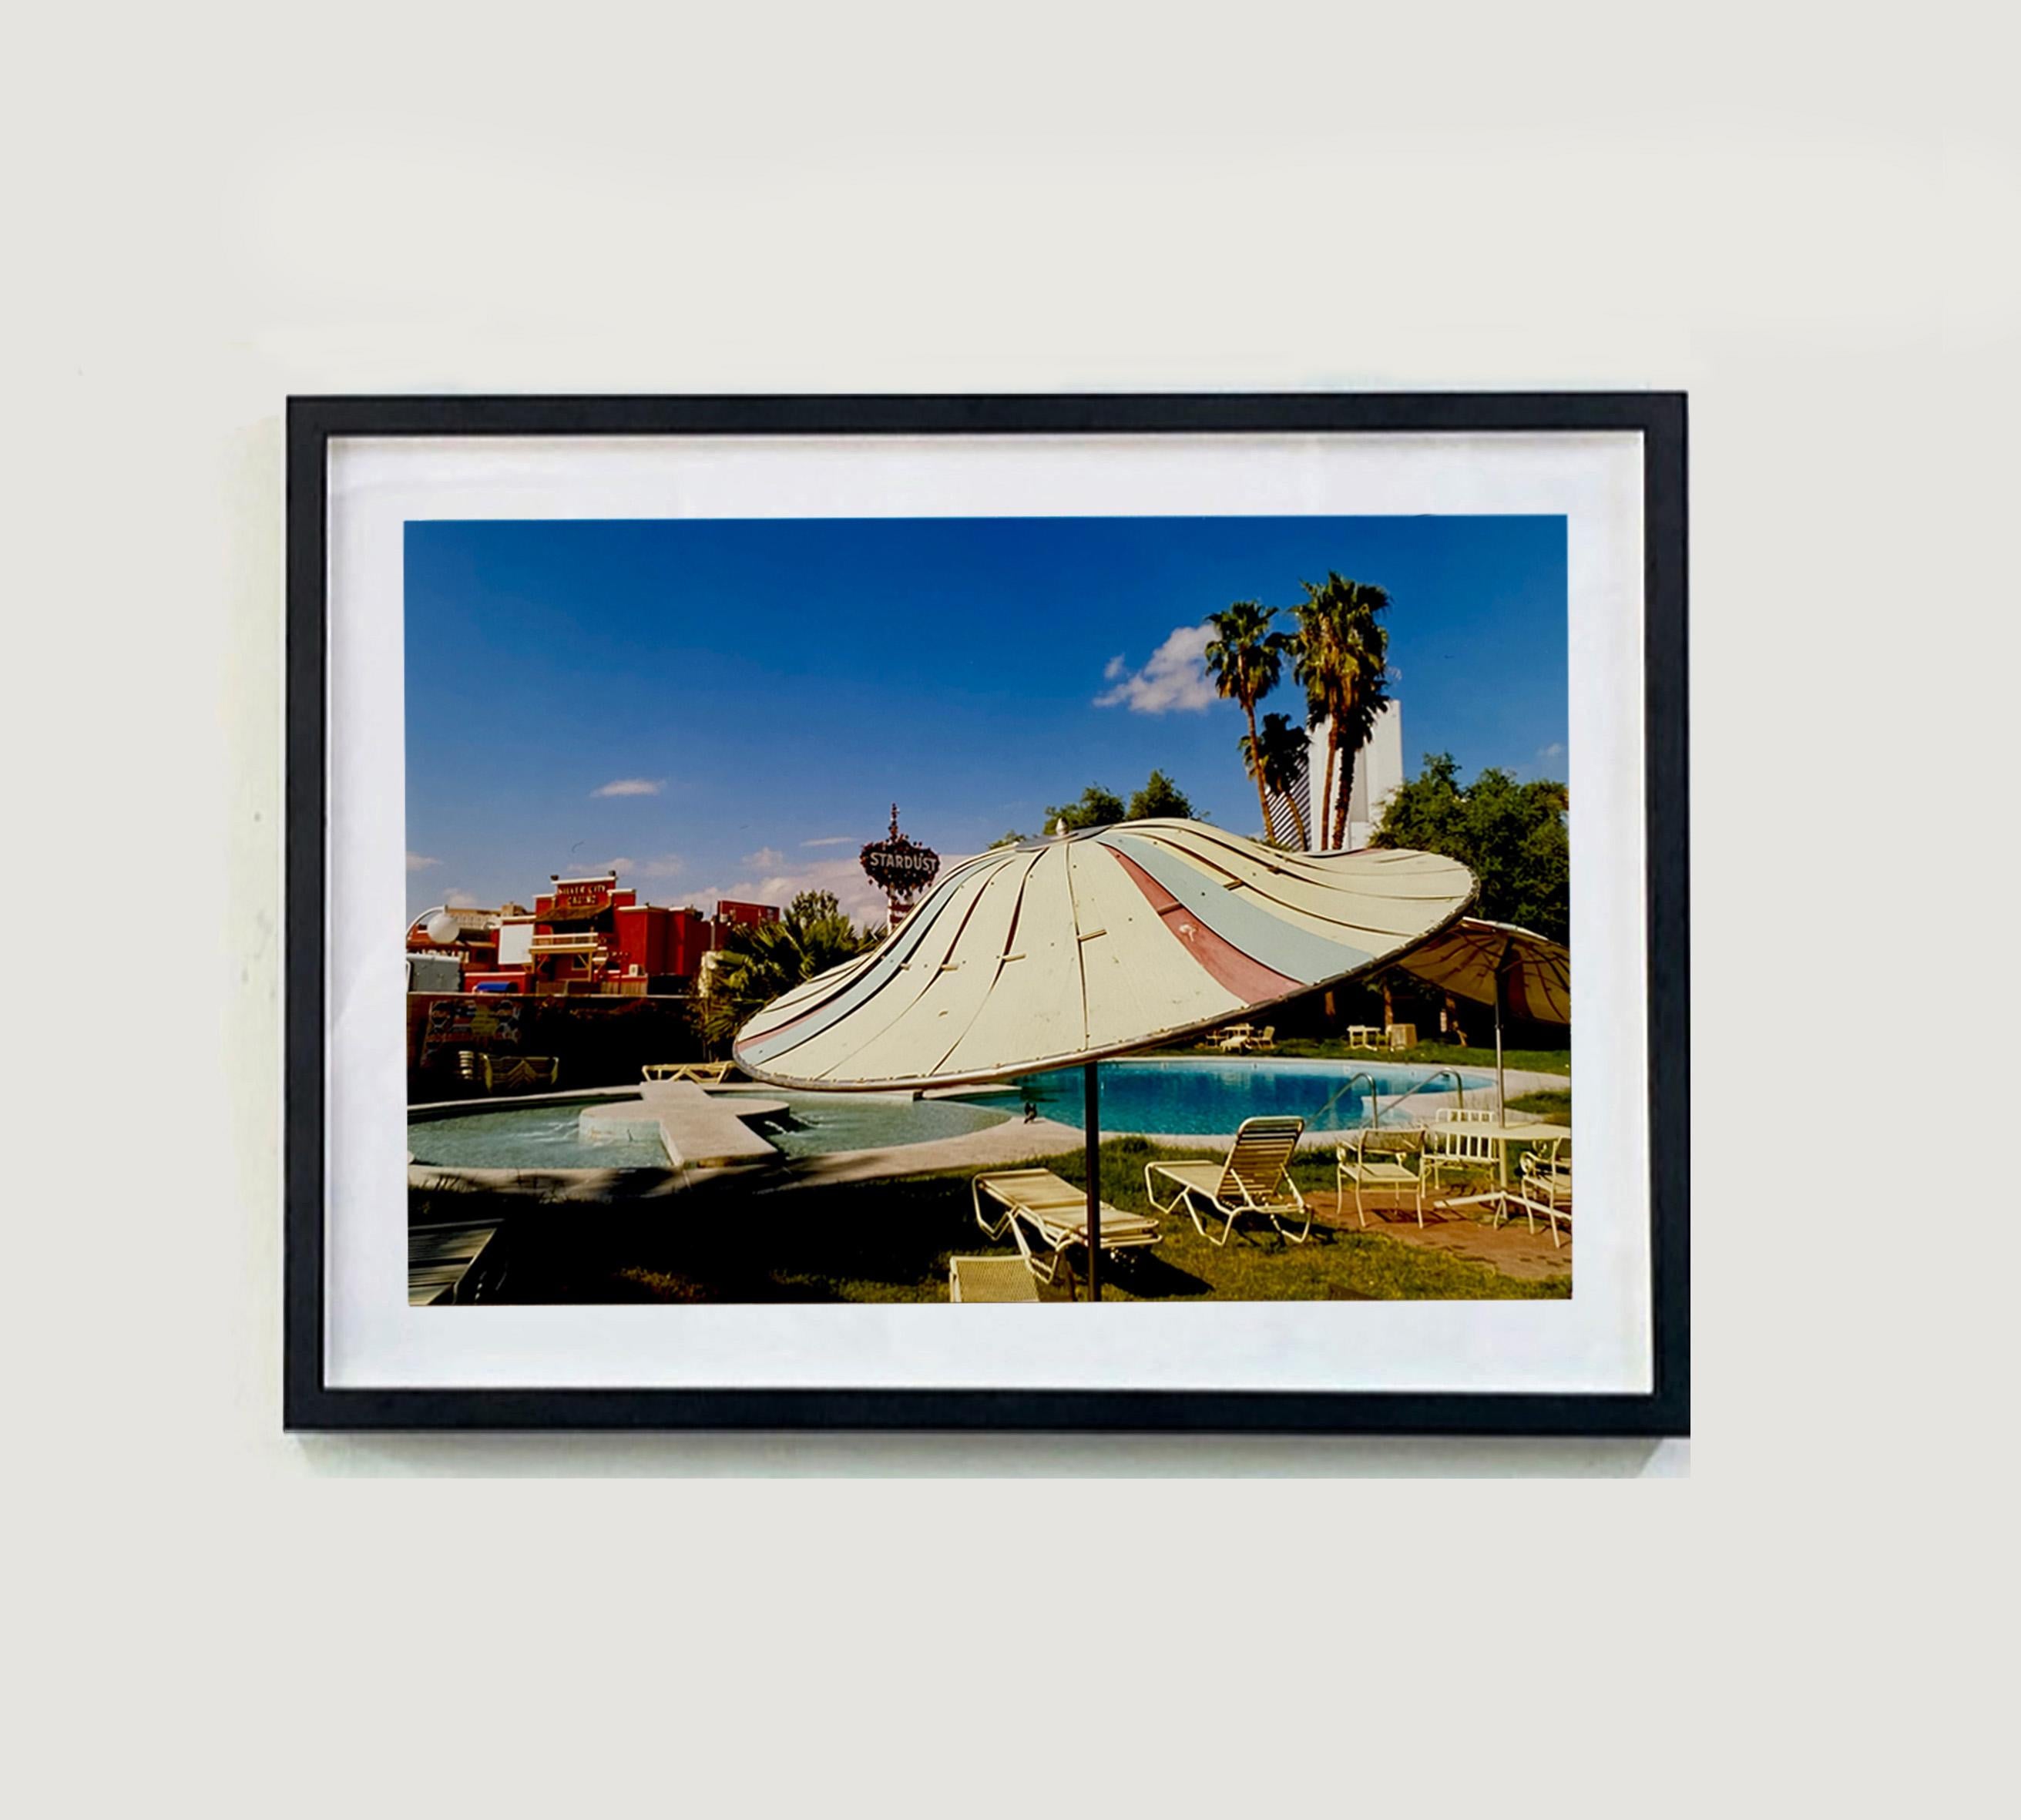 Parasol de plage, motel El Morocco, Las Vegas - Photographie couleur américaine - Print de Richard Heeps